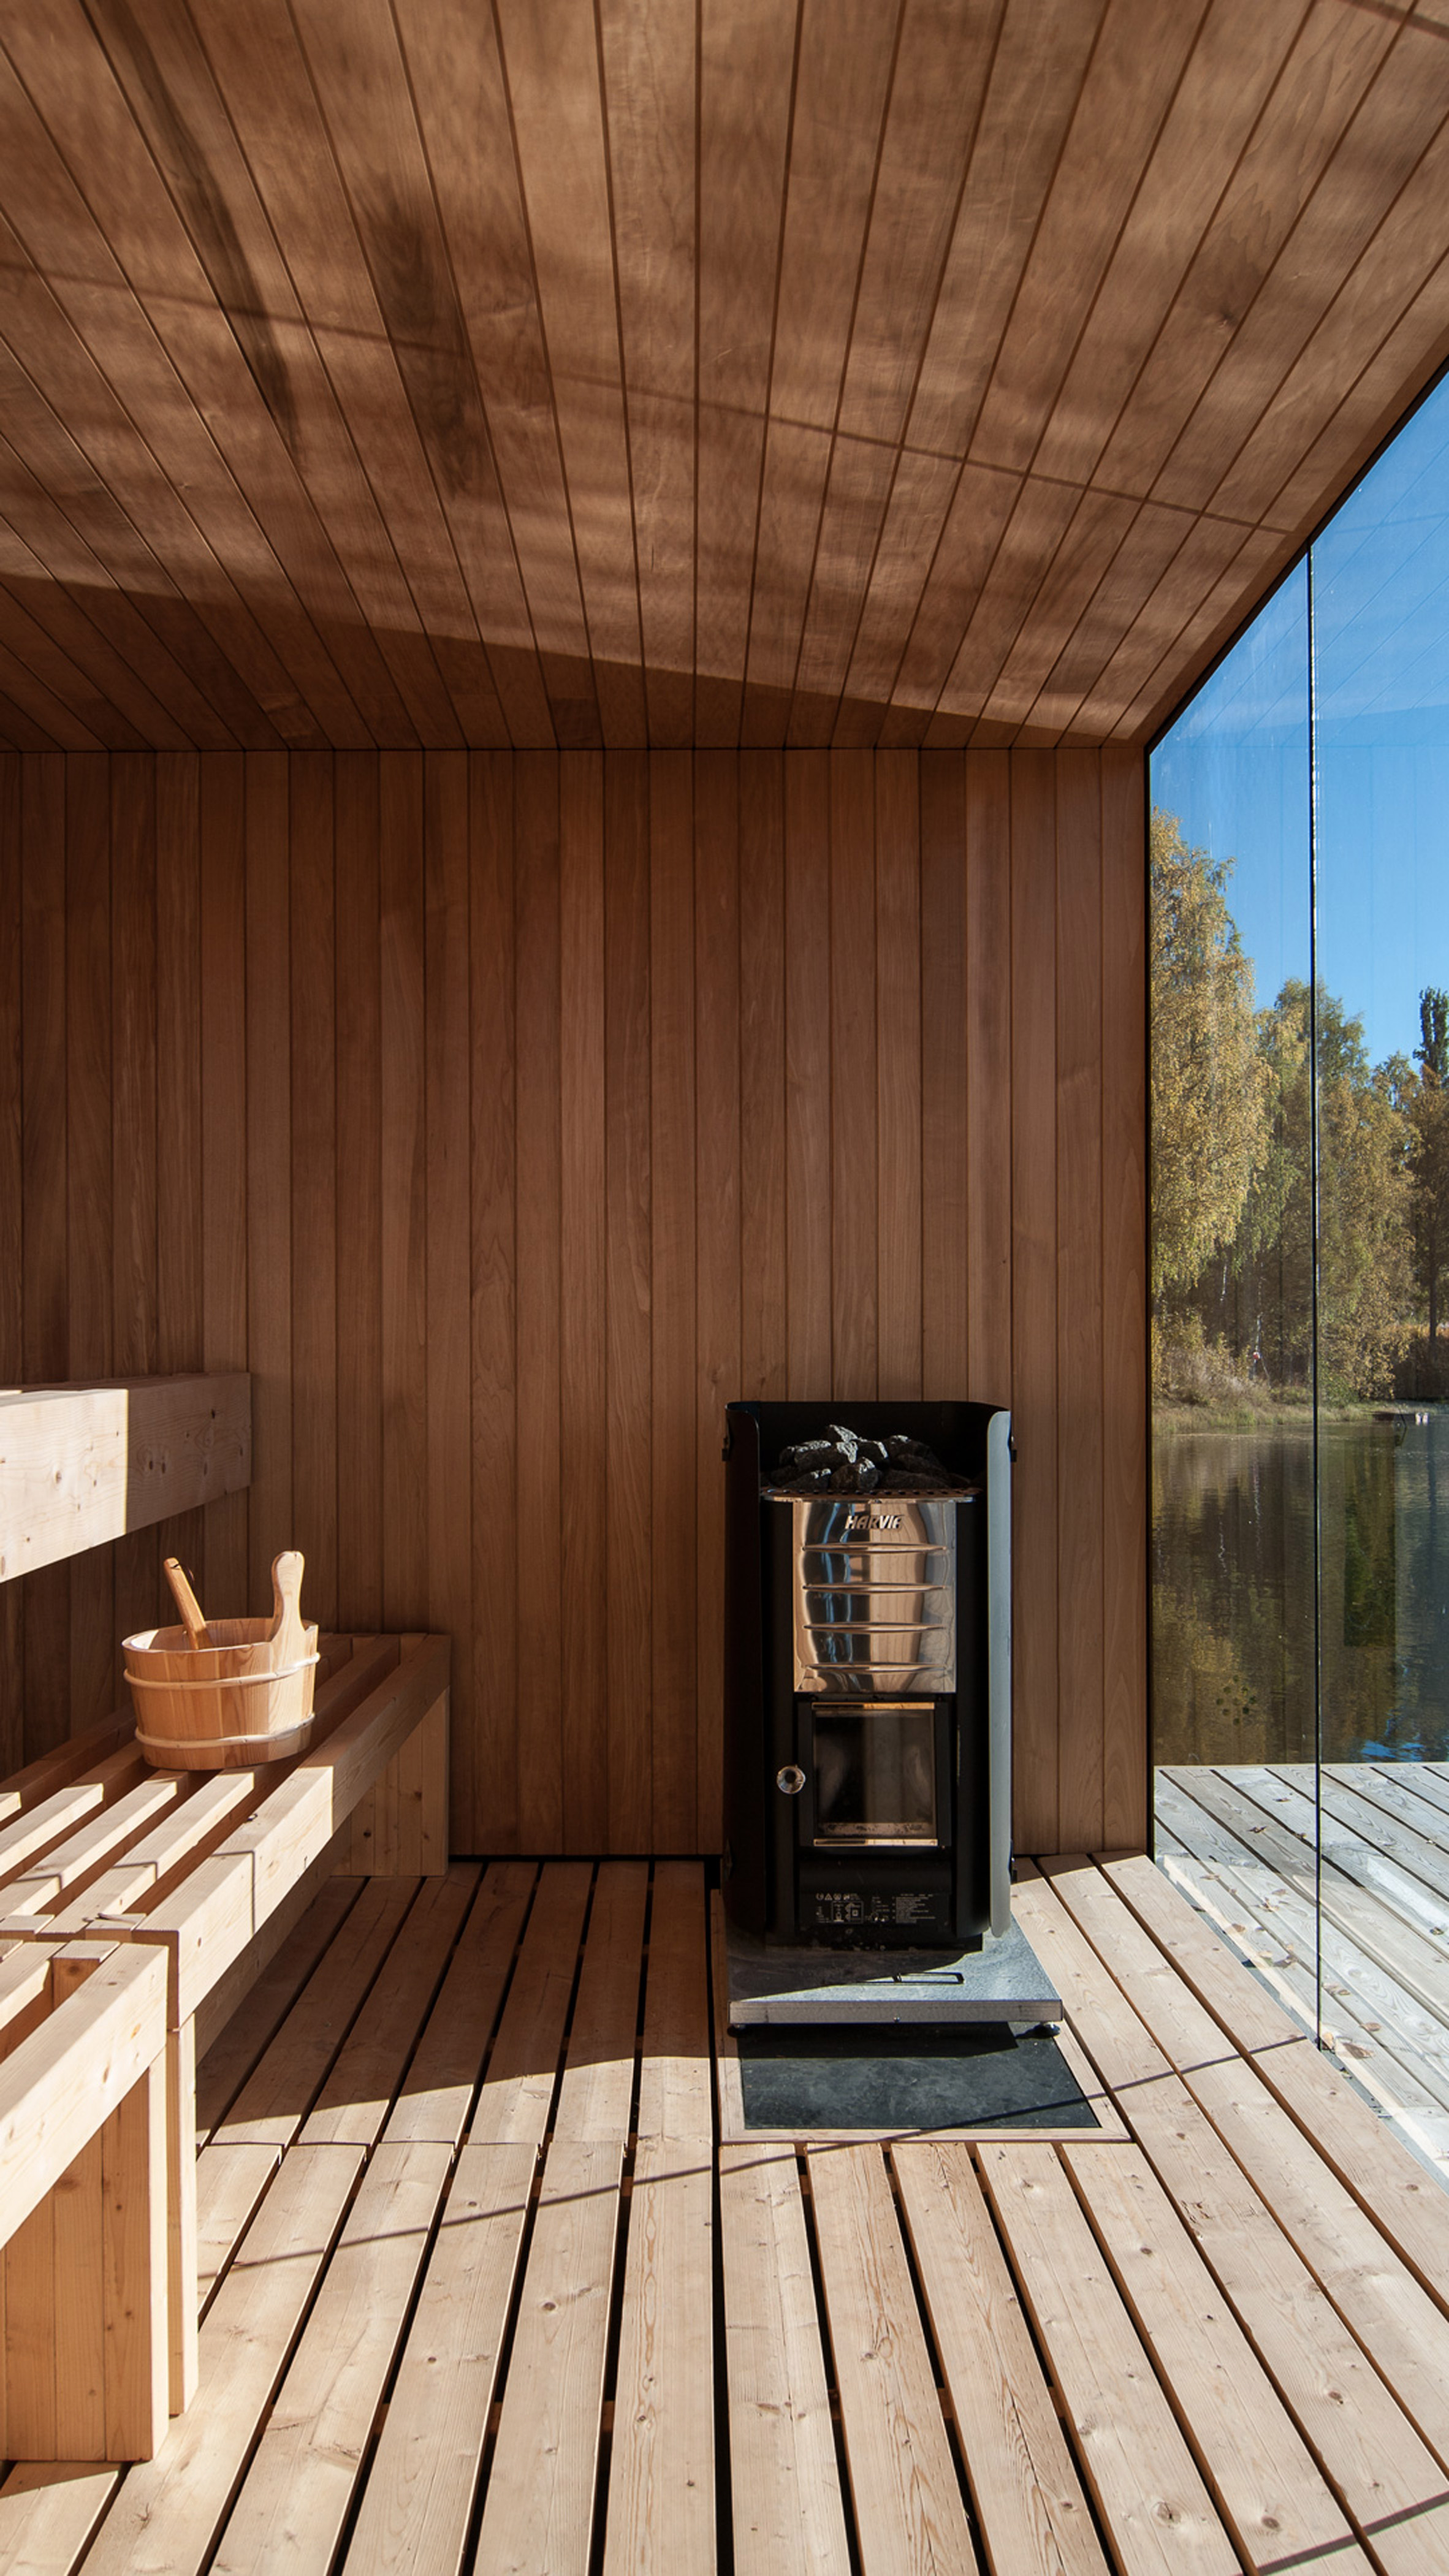 Small Architecture Workshop's charred-wood sauna floats on Swedish lake